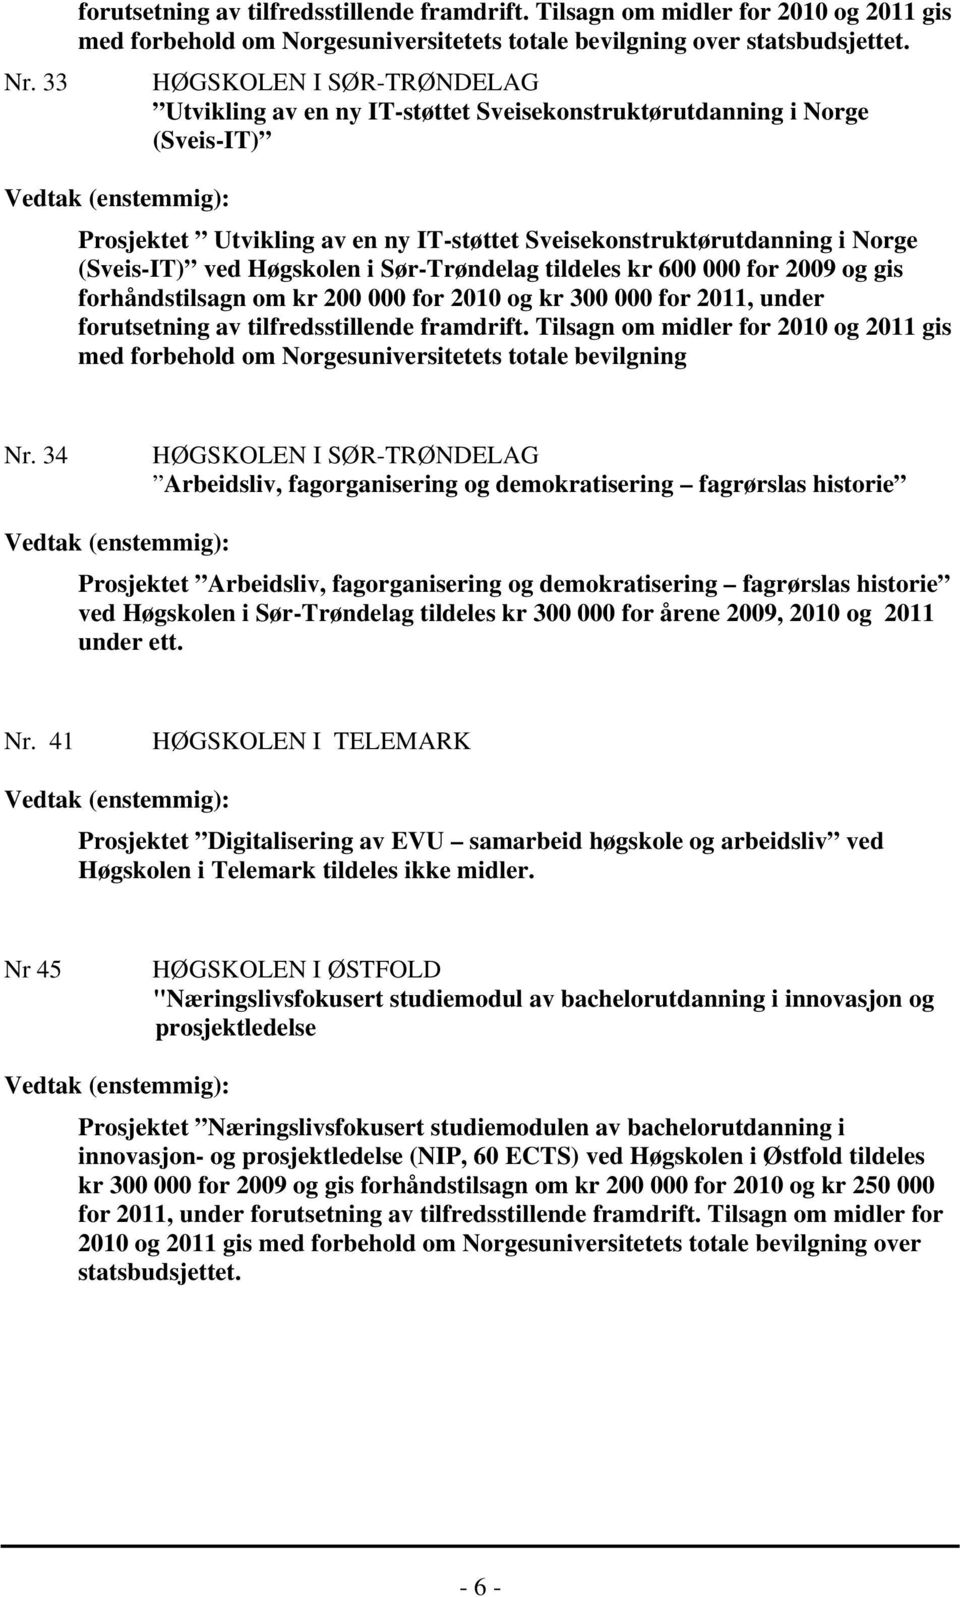 Sveisekonstruktørutdanning i Norge (Sveis-IT) ved Høgskolen i Sør-Trøndelag tildeles kr 600 000 for 2009 og gis forhåndstilsagn om kr 200 000 for 2010 og kr 300 000 for 2011, under forutsetning av